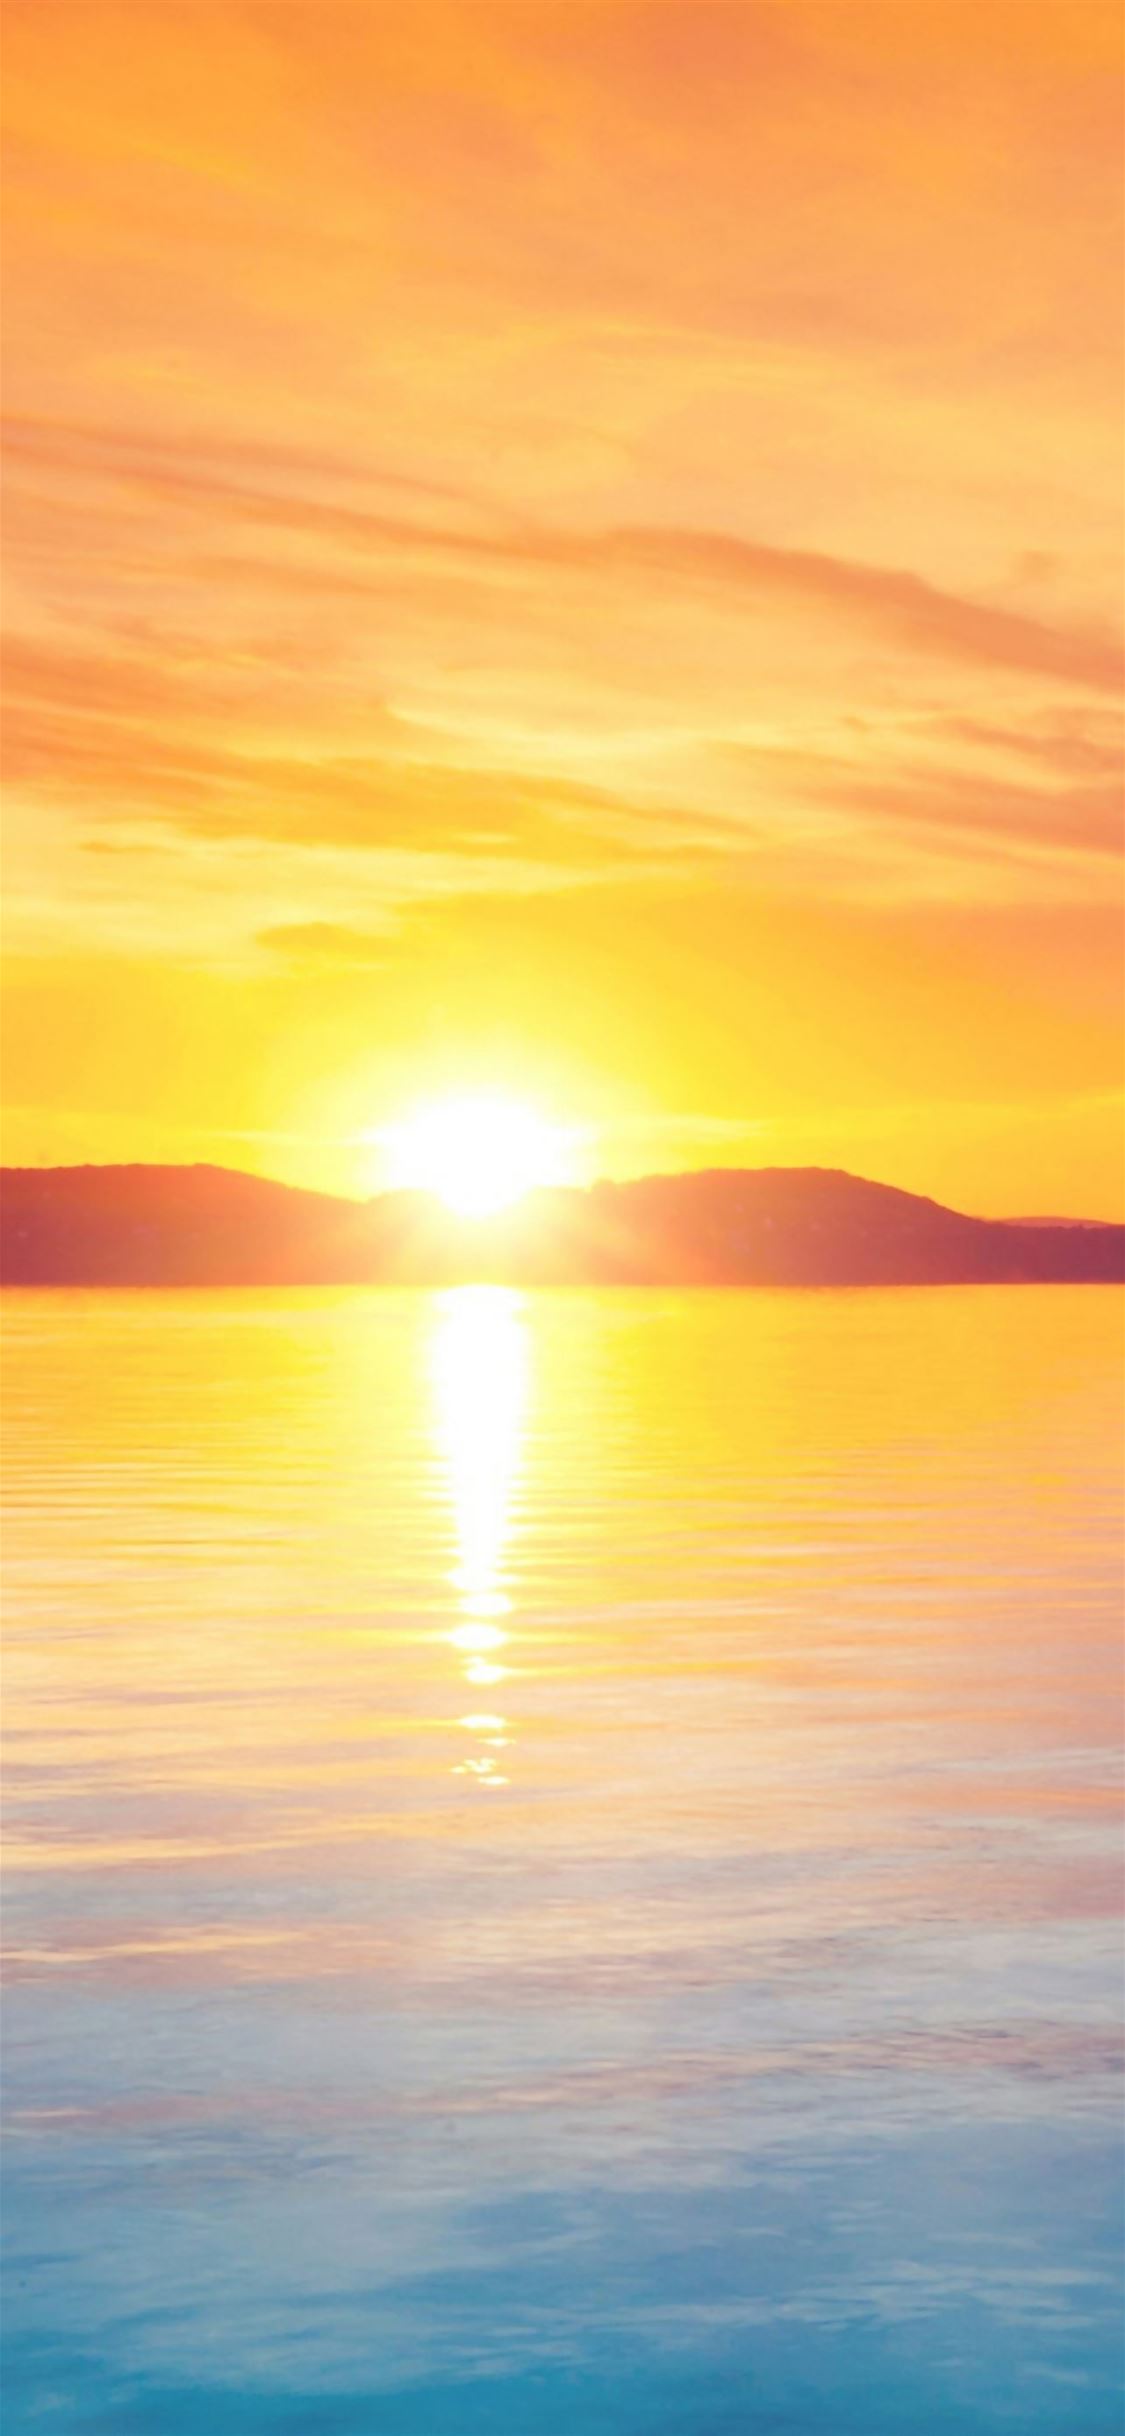 Beautiful sunrise iPhone wallpaper 